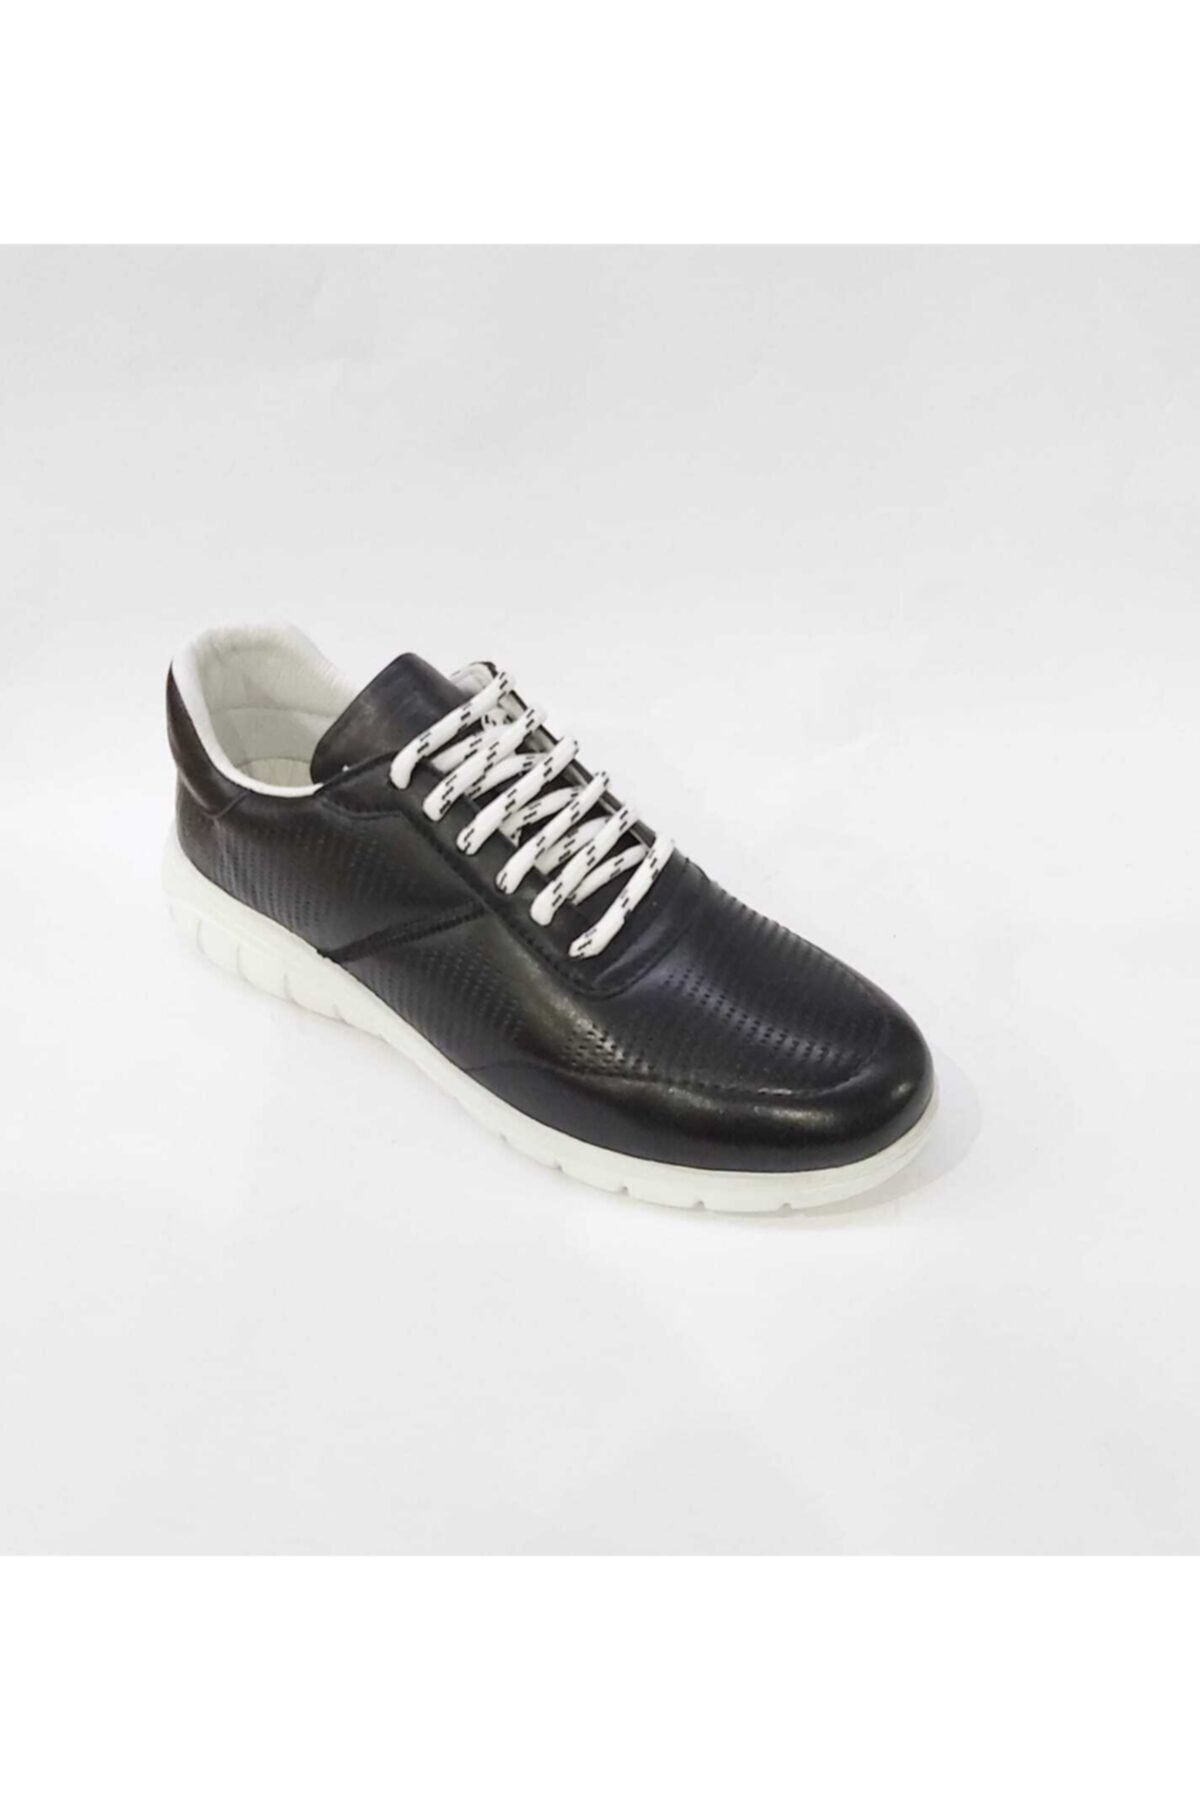 Libero Kadın Siyah Yazlık Sneaker Ayakkabı Lz3414